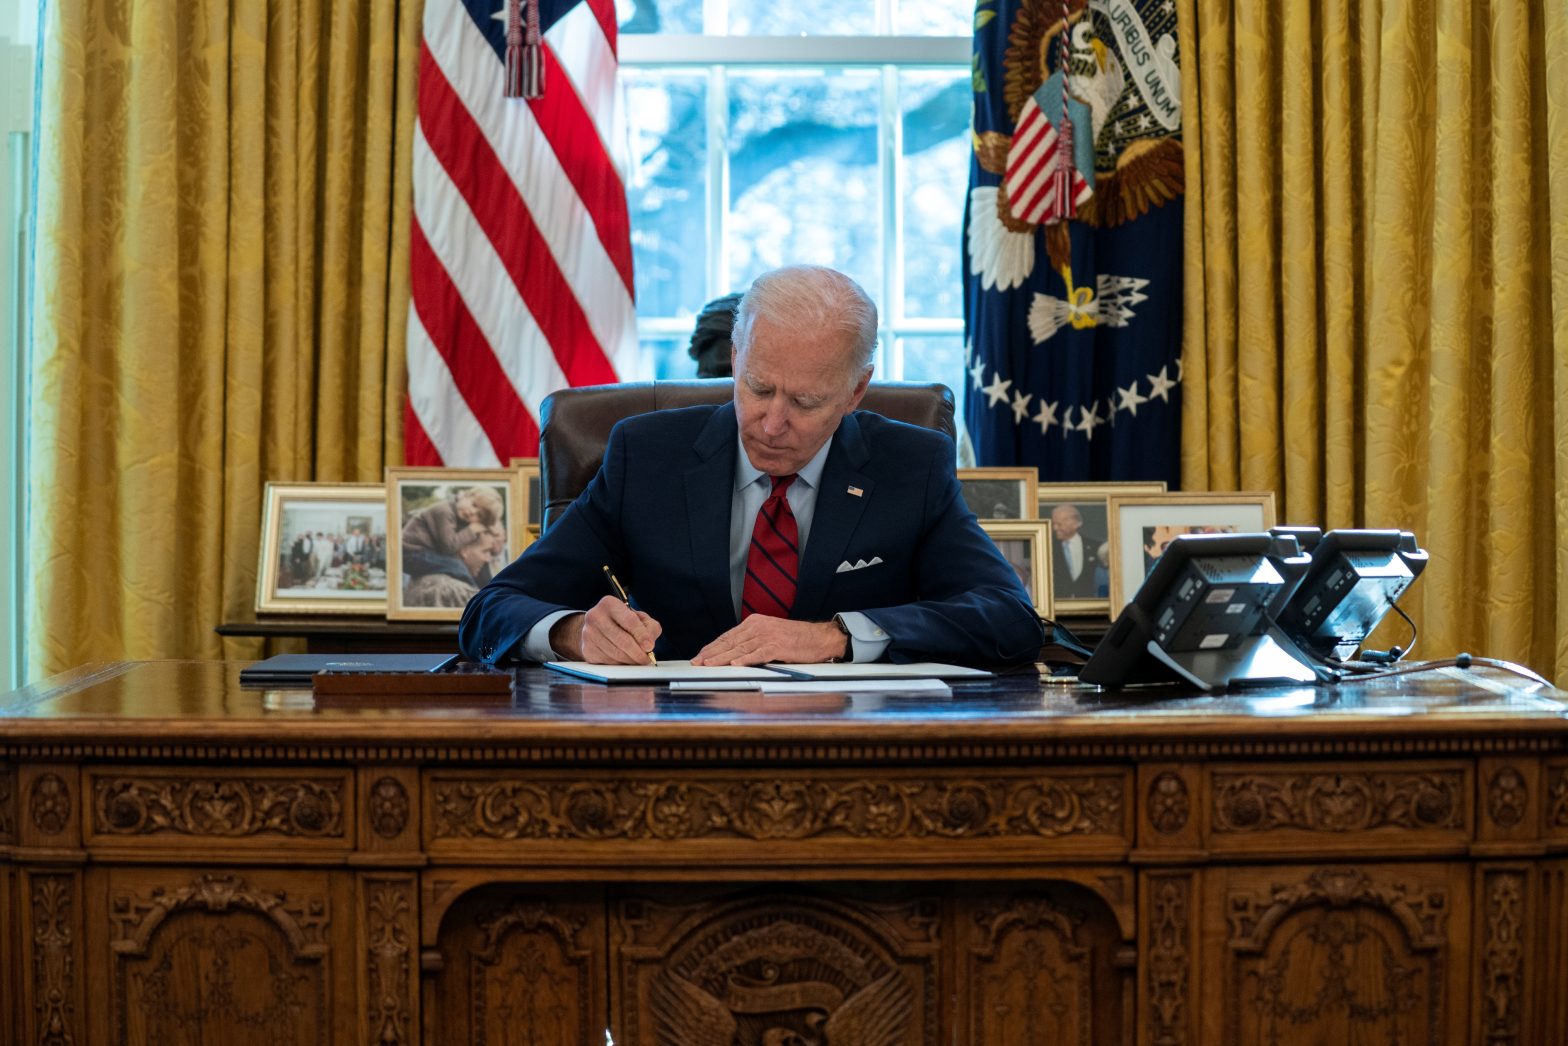 Biden Extends Ban on Housing Foreclosures